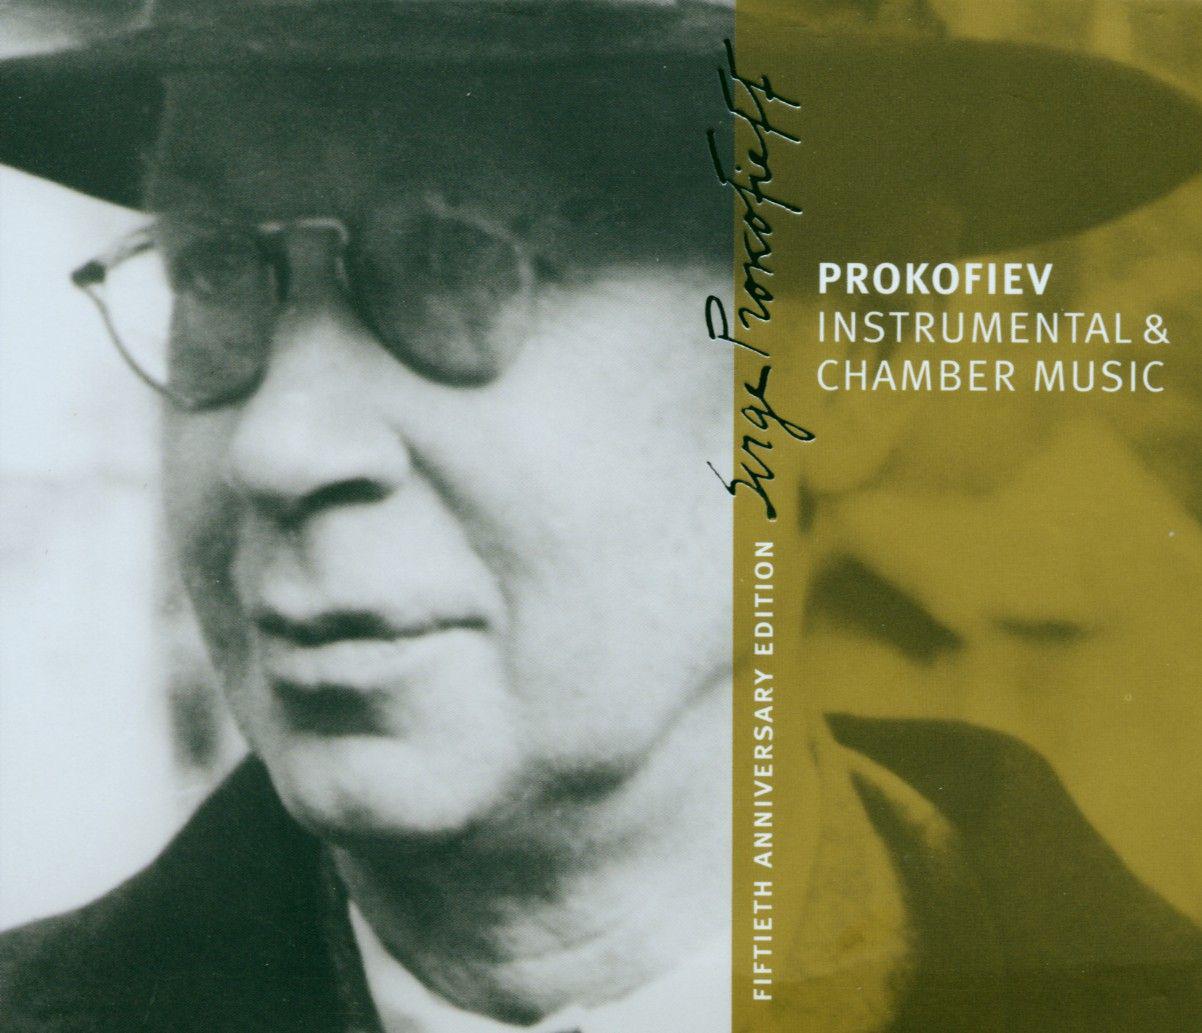 Prokofiev : Instrumental & Chamber Music [Prokofiev Edition Vol.4]